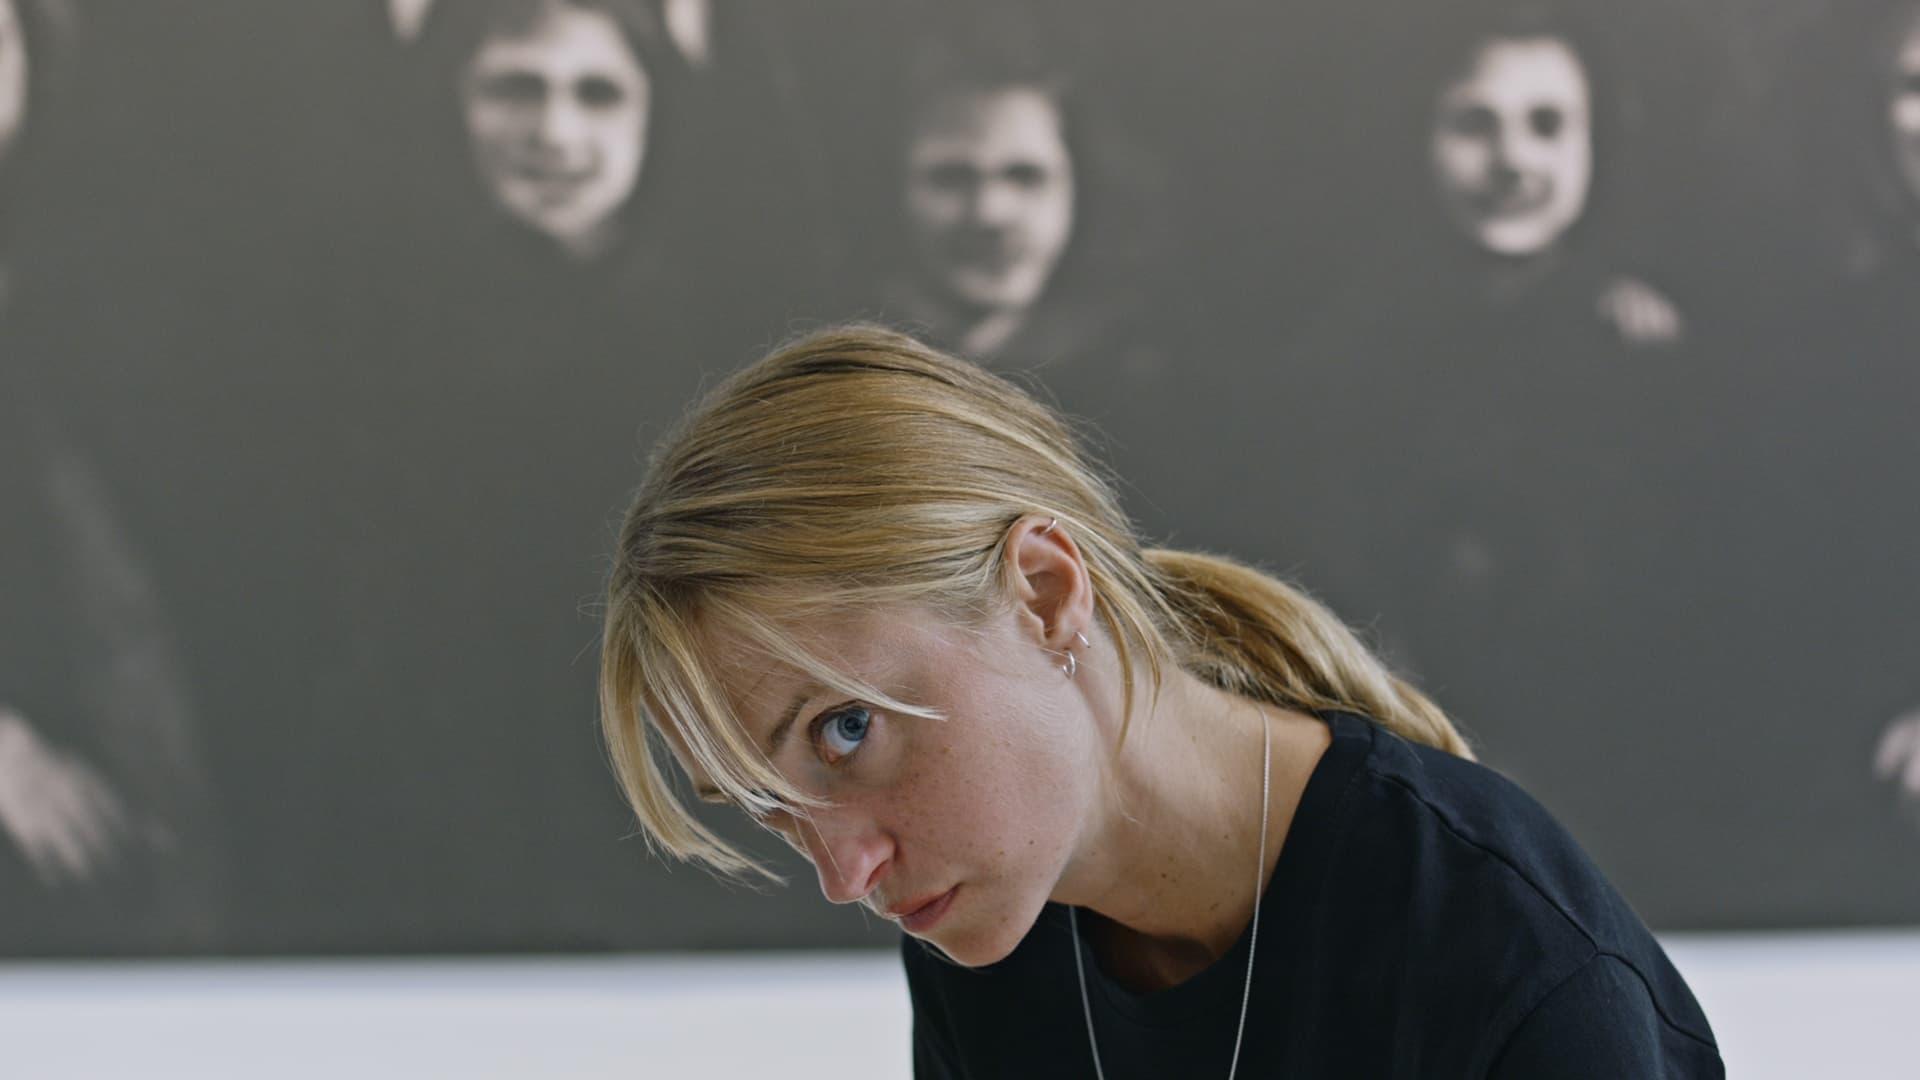 Stefan Isaksson backdrop